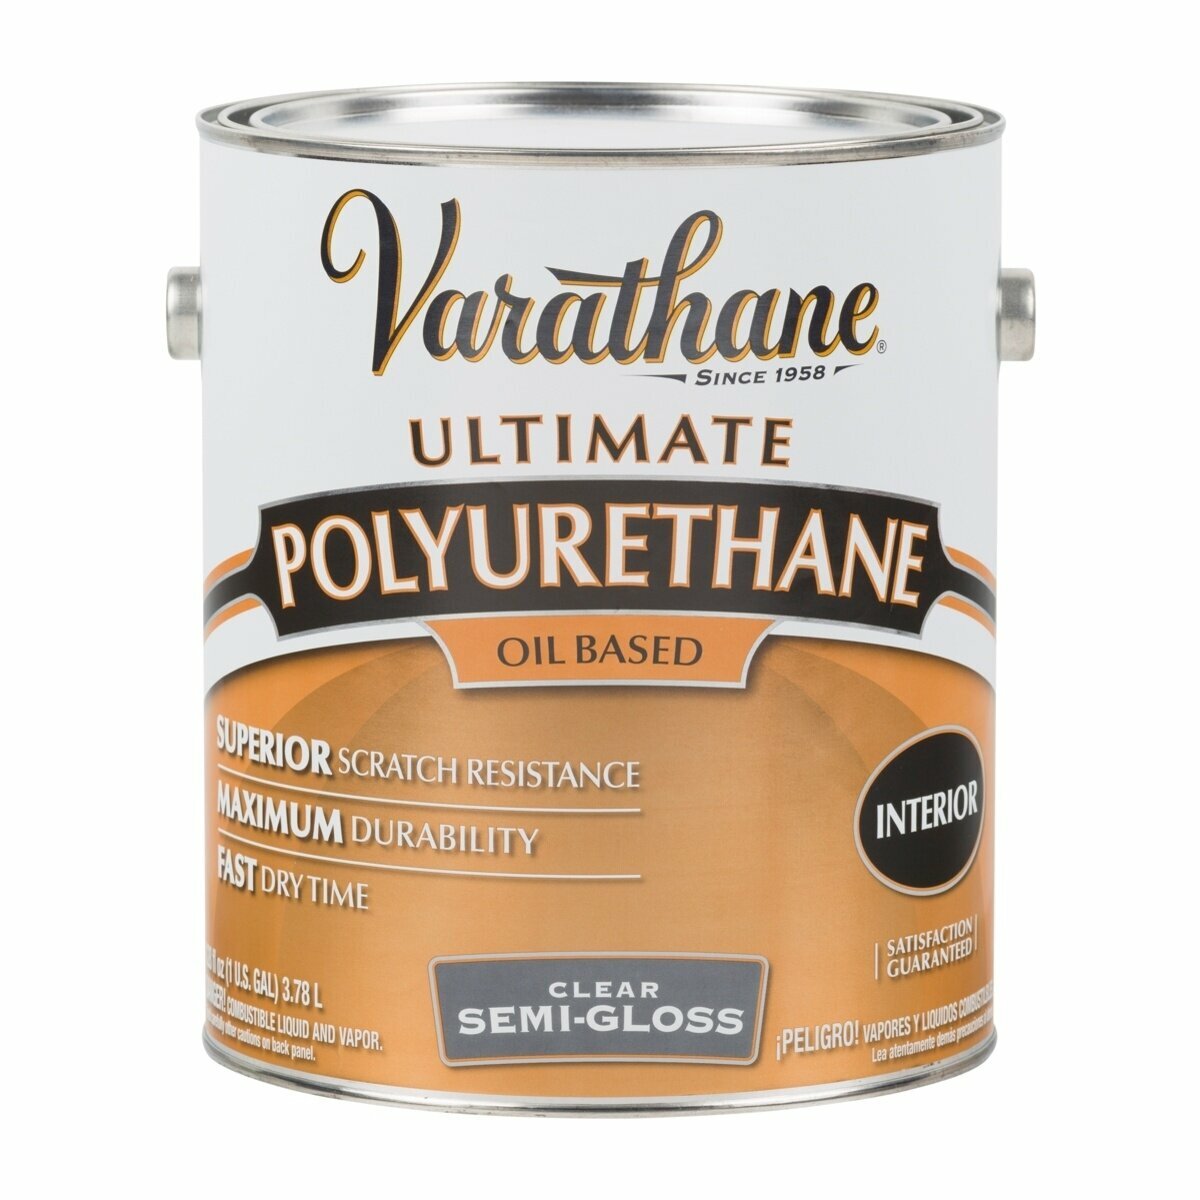 Полиуретановый лак на масляной основе для внутренних работ Varathane Ultimate Polyurethane Oil Based 3,78 л Полуглянцевый 6031